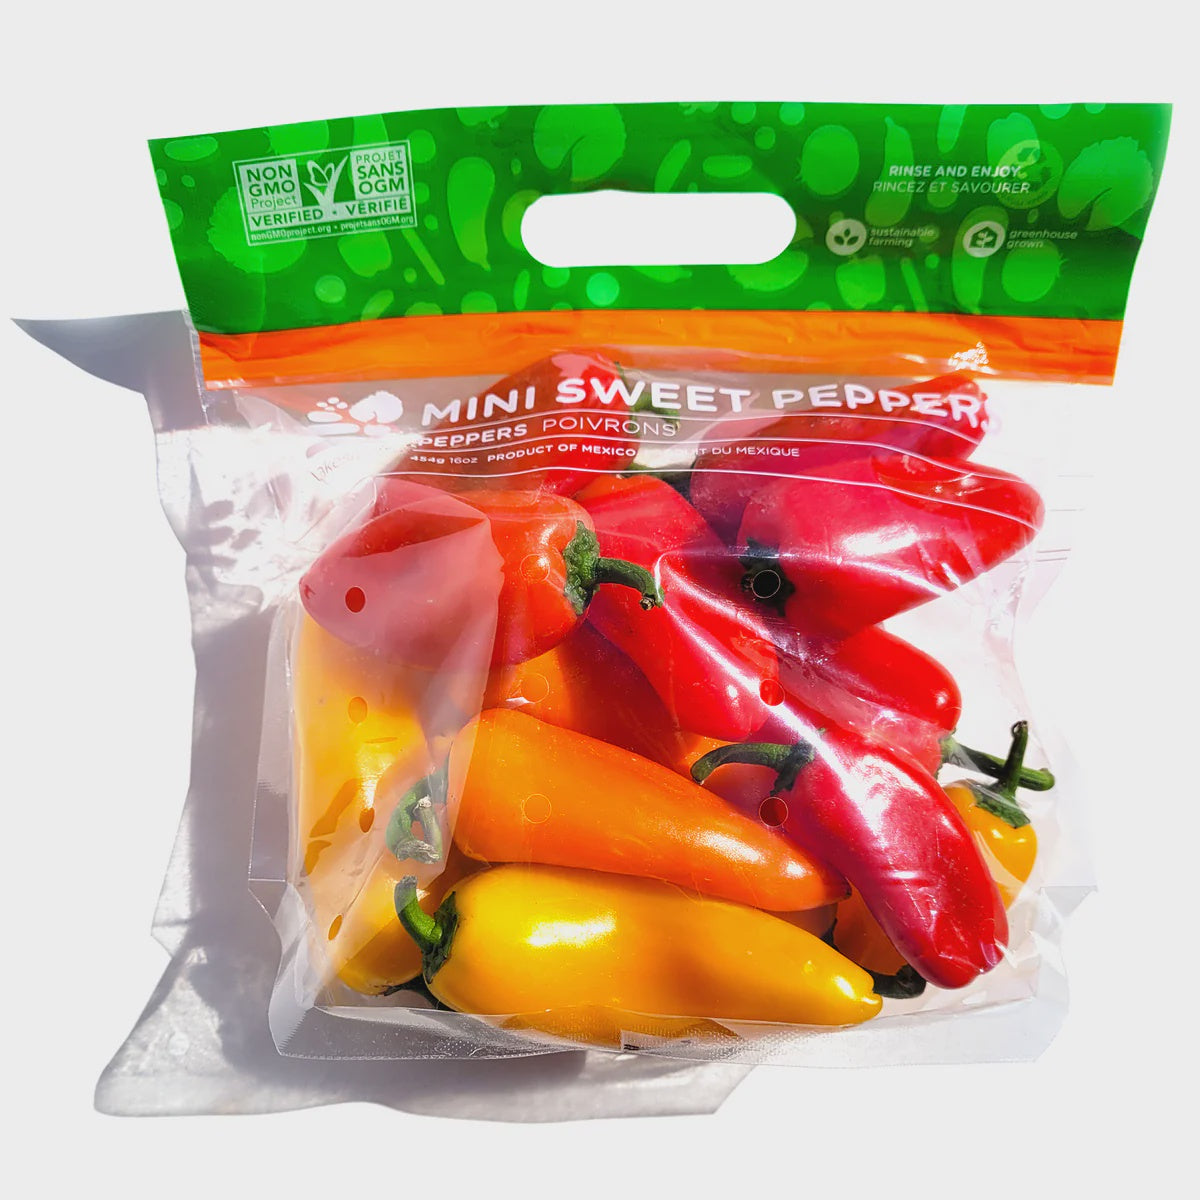 Mini Sweet Peppers 8 oz.